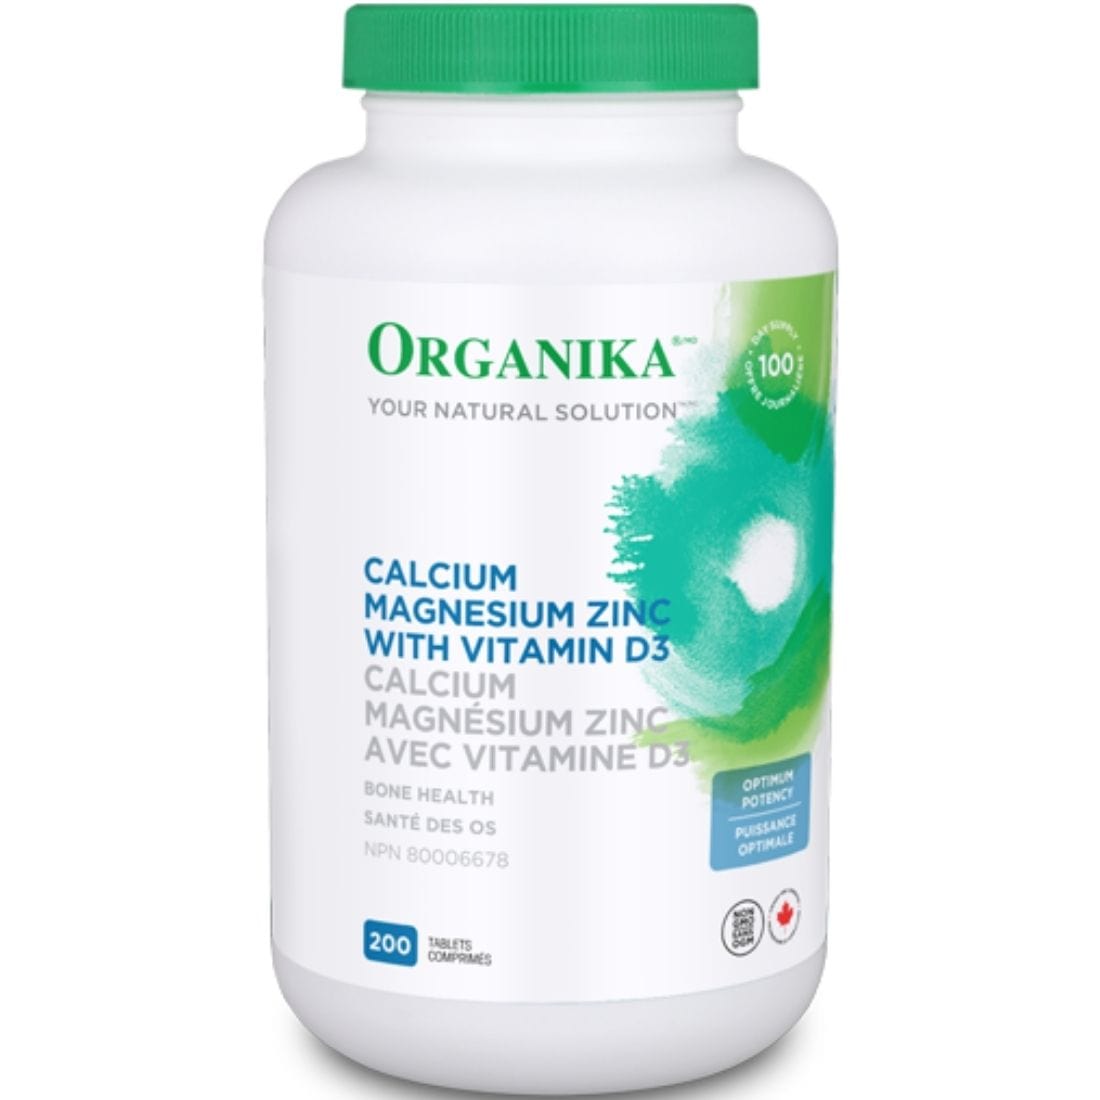 Organika Calcium Magnesium with Zinc and Vitamin D3 (Optimum Potency)